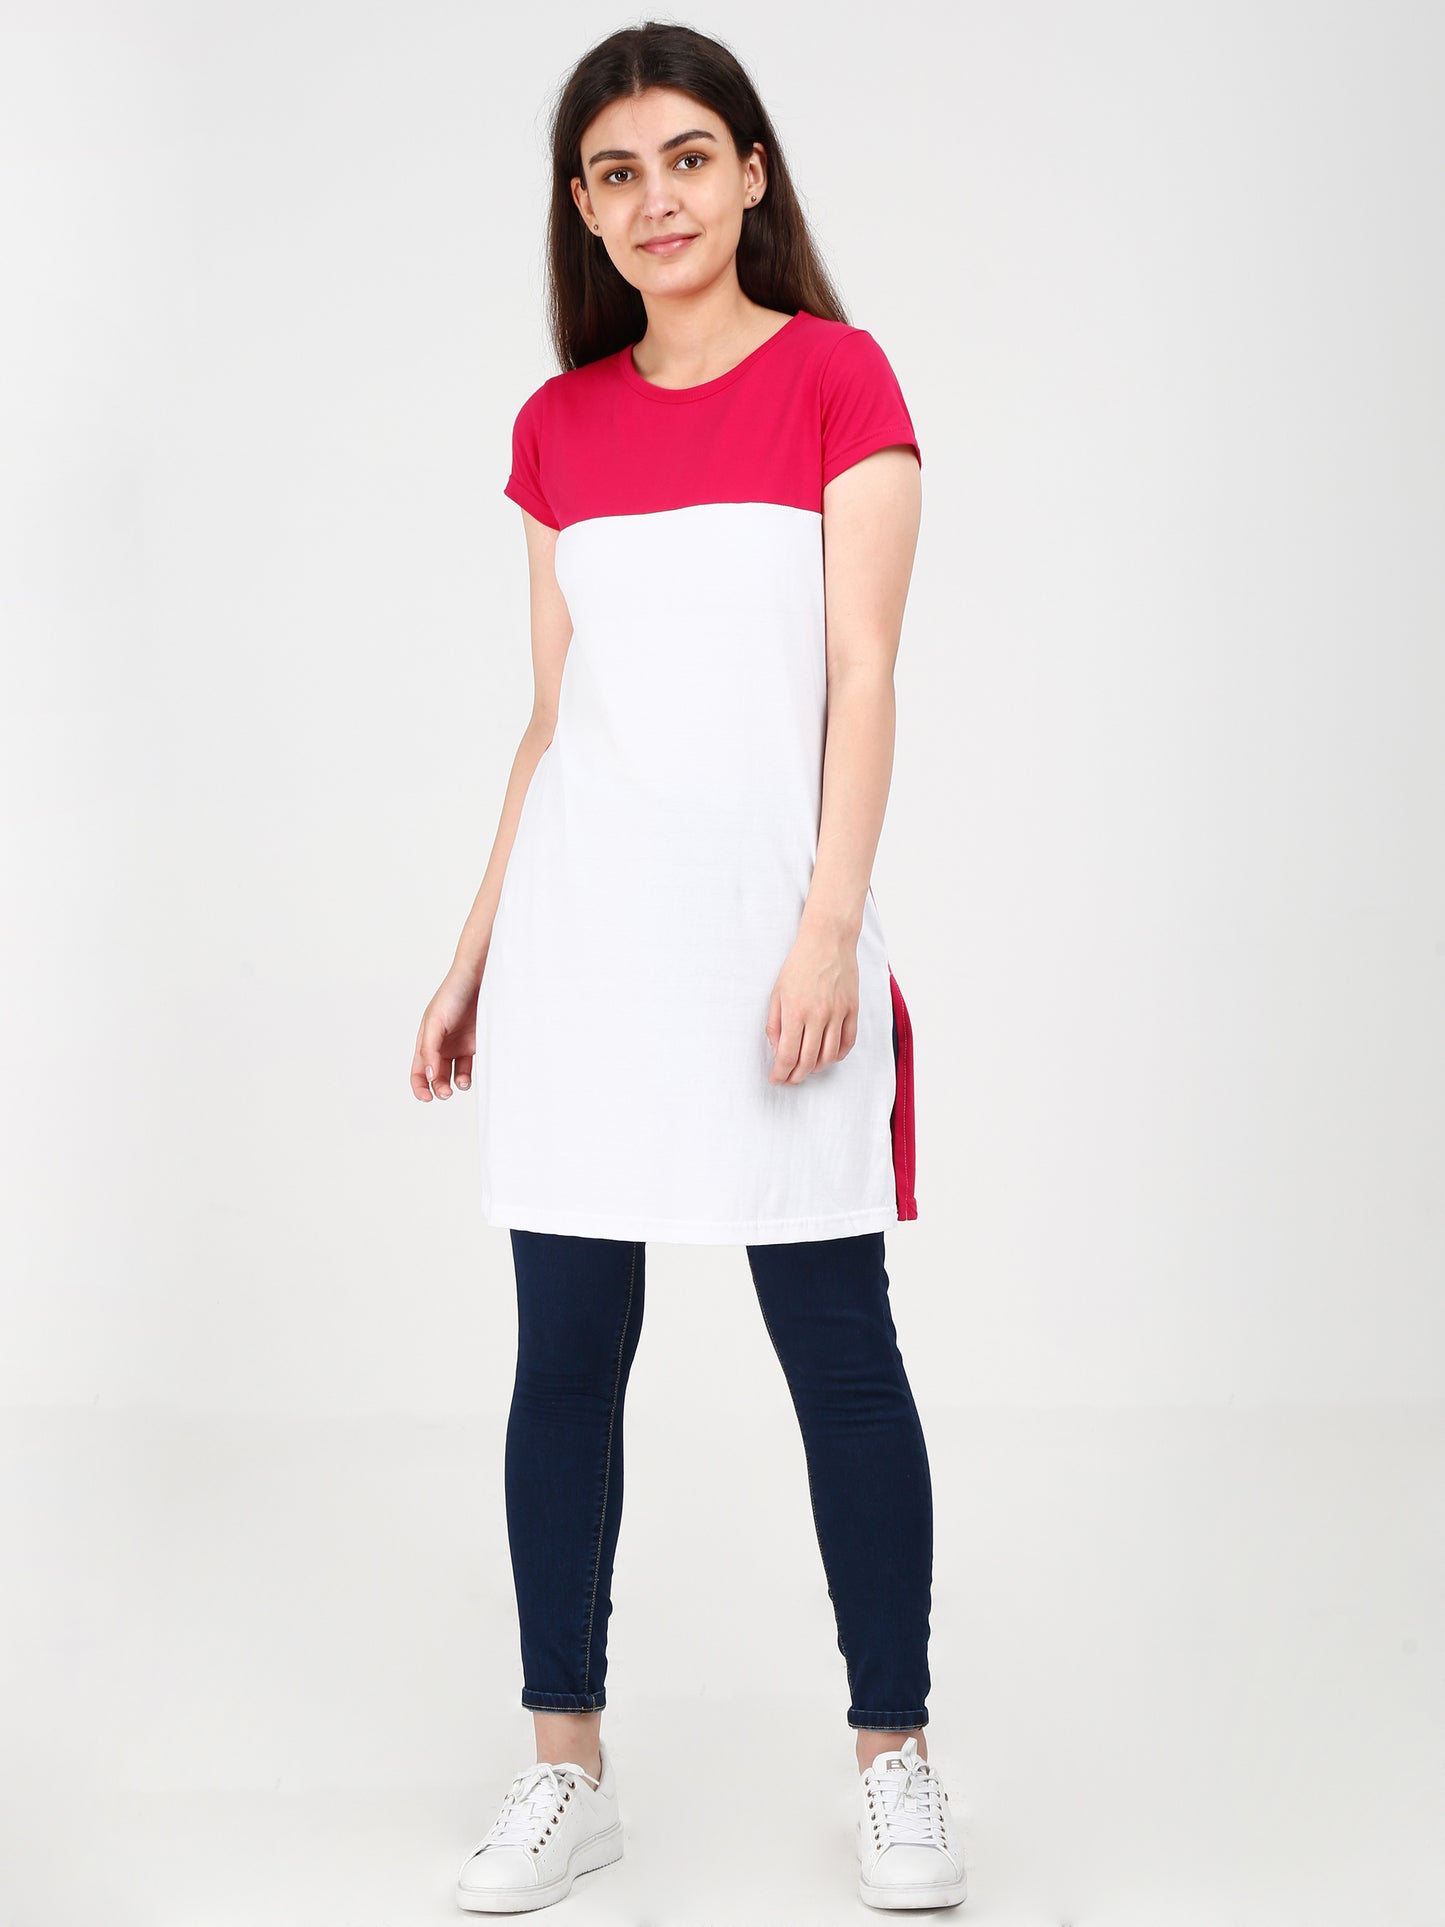 Women's Cotton Color Block Pinkwhite Color Long Top